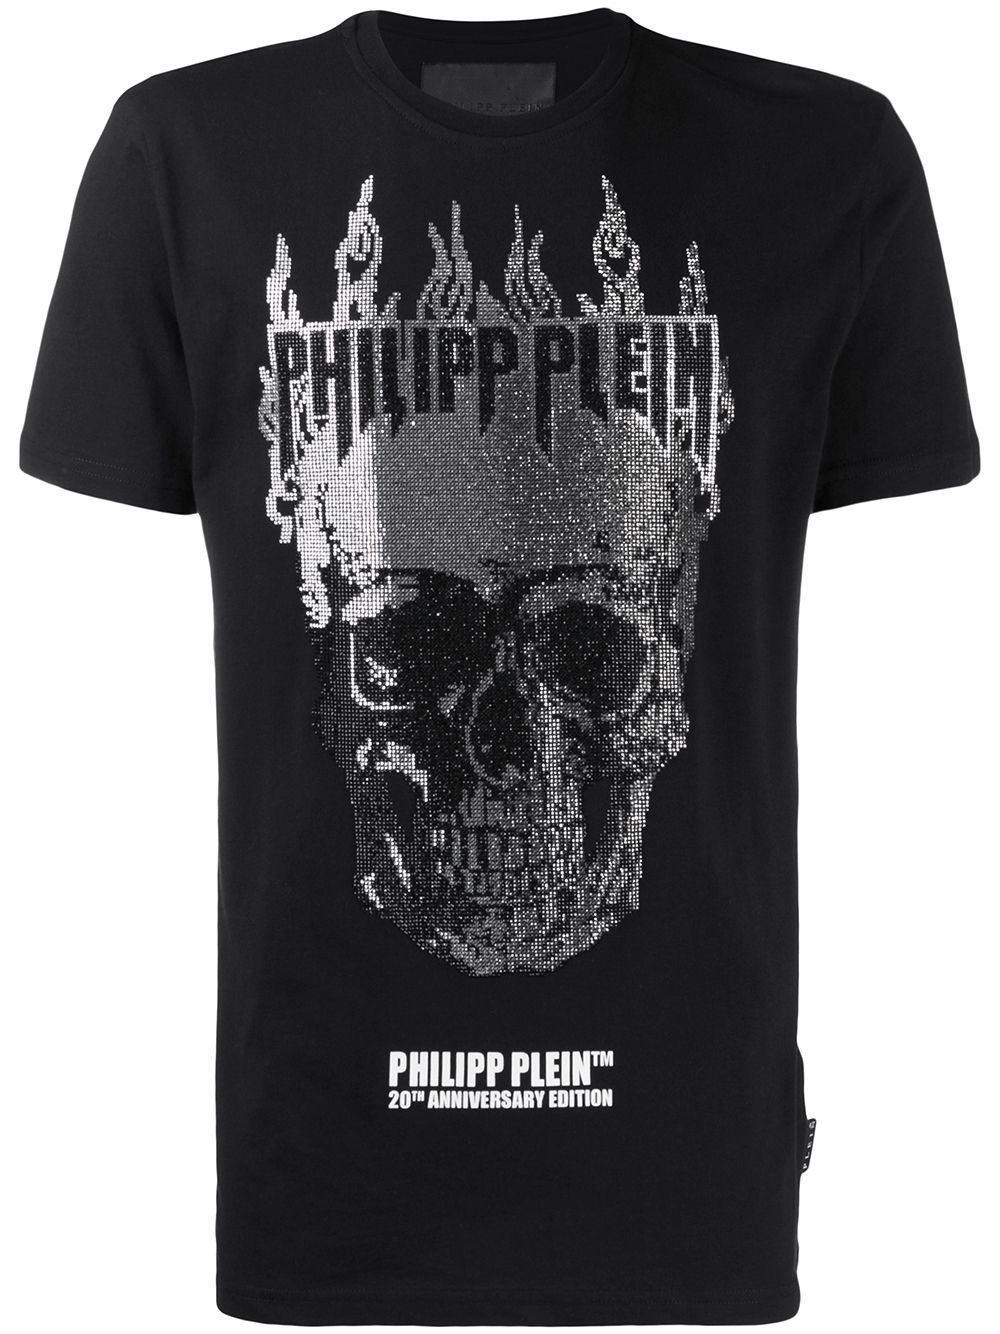 фото Philipp plein футболка flame с декором skull